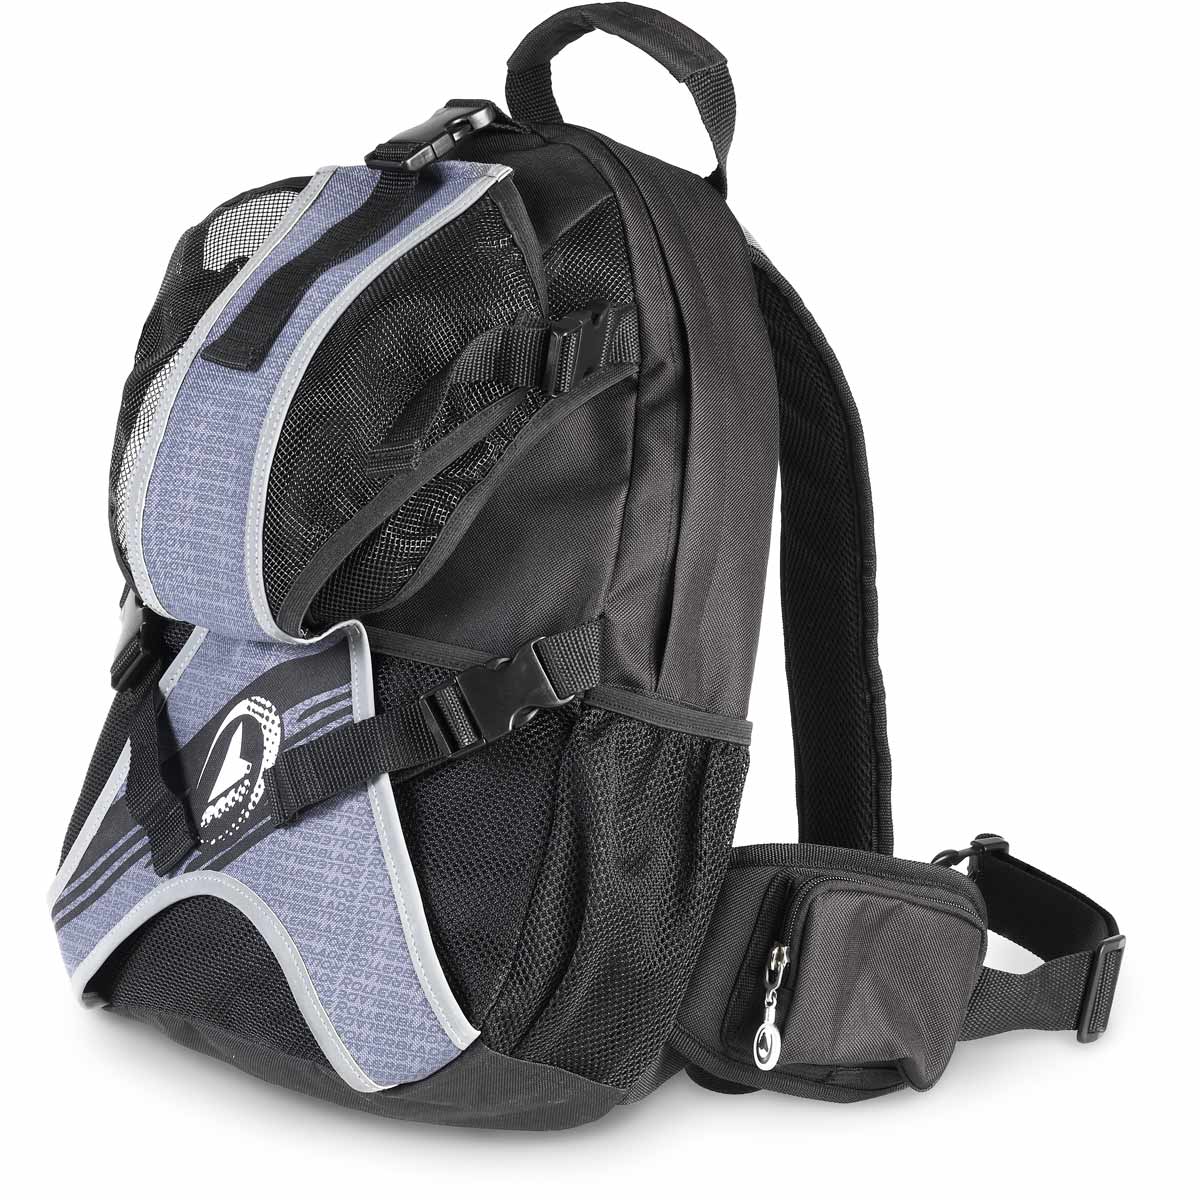 BACK PACK LT25 - Praktischer Rucksack zum Schlittschuhlaufen